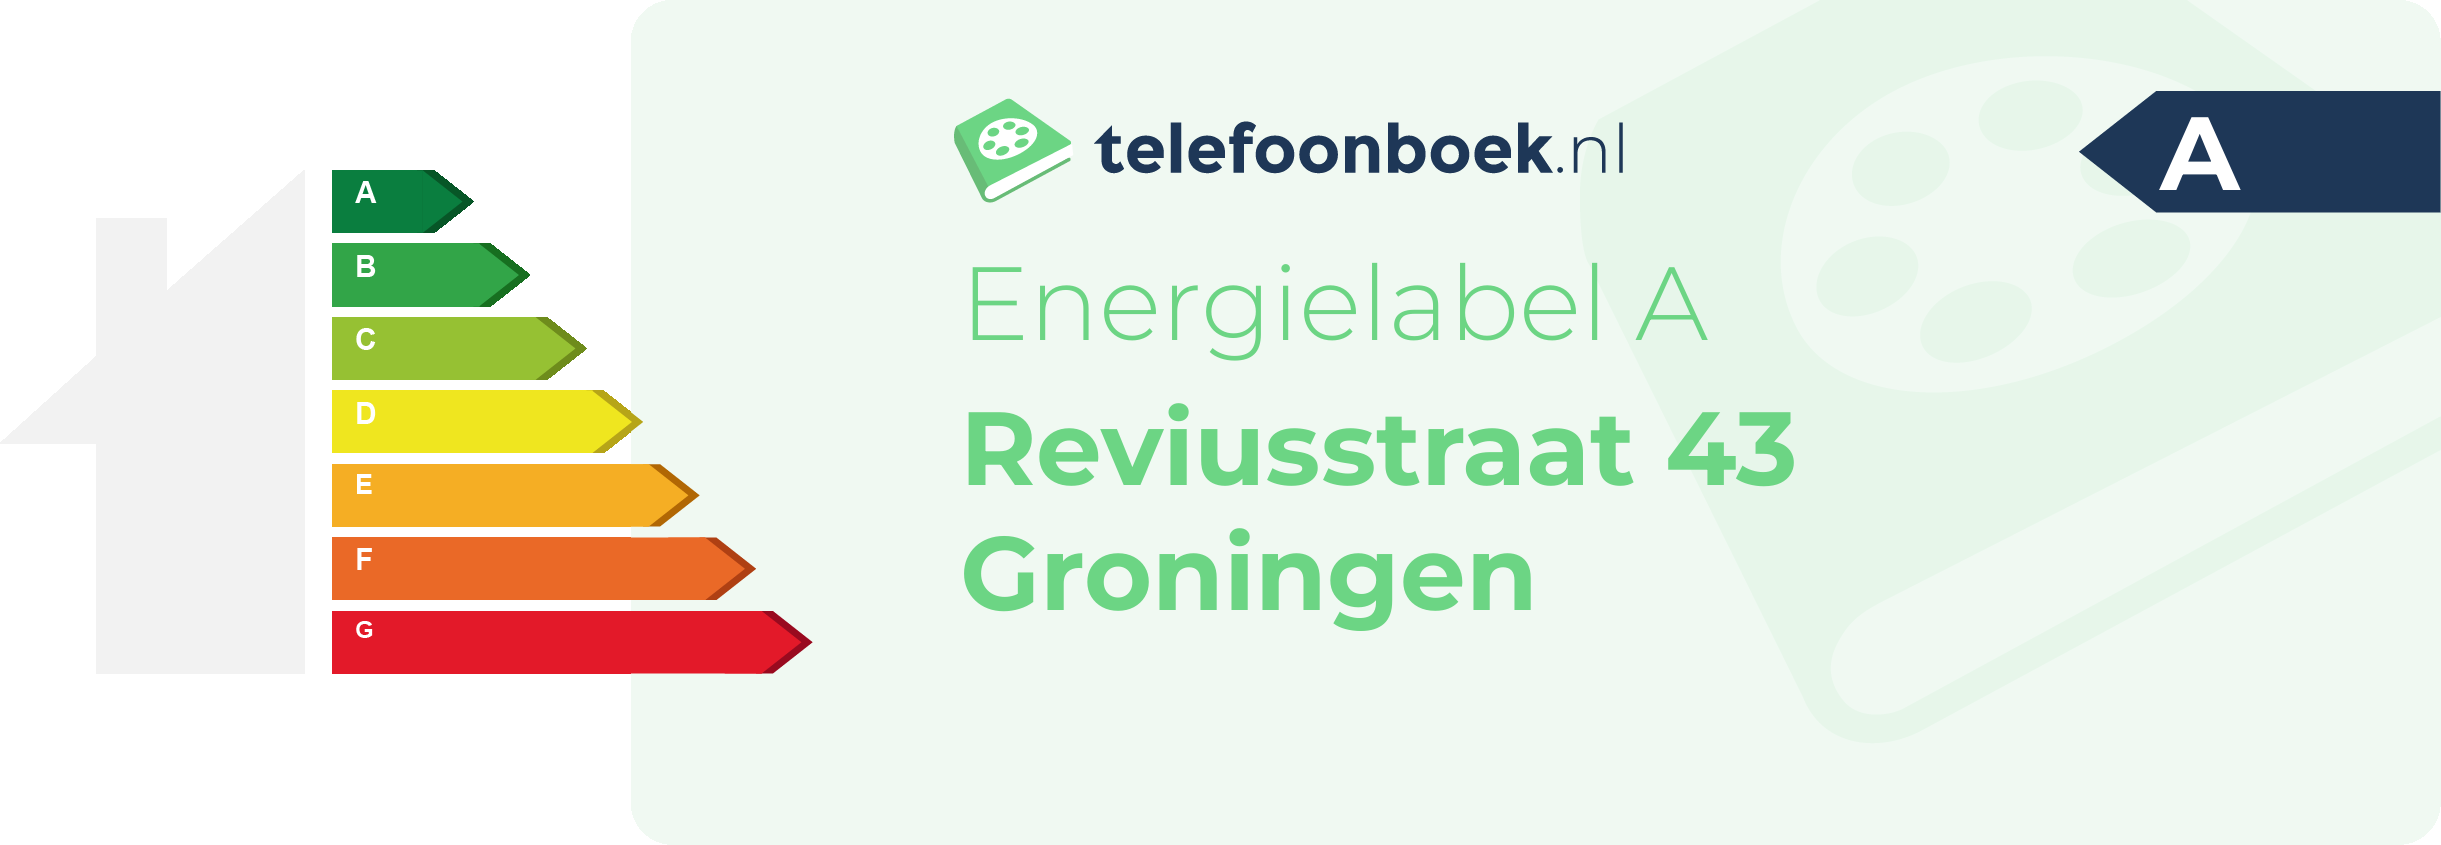 Energielabel Reviusstraat 43 Groningen